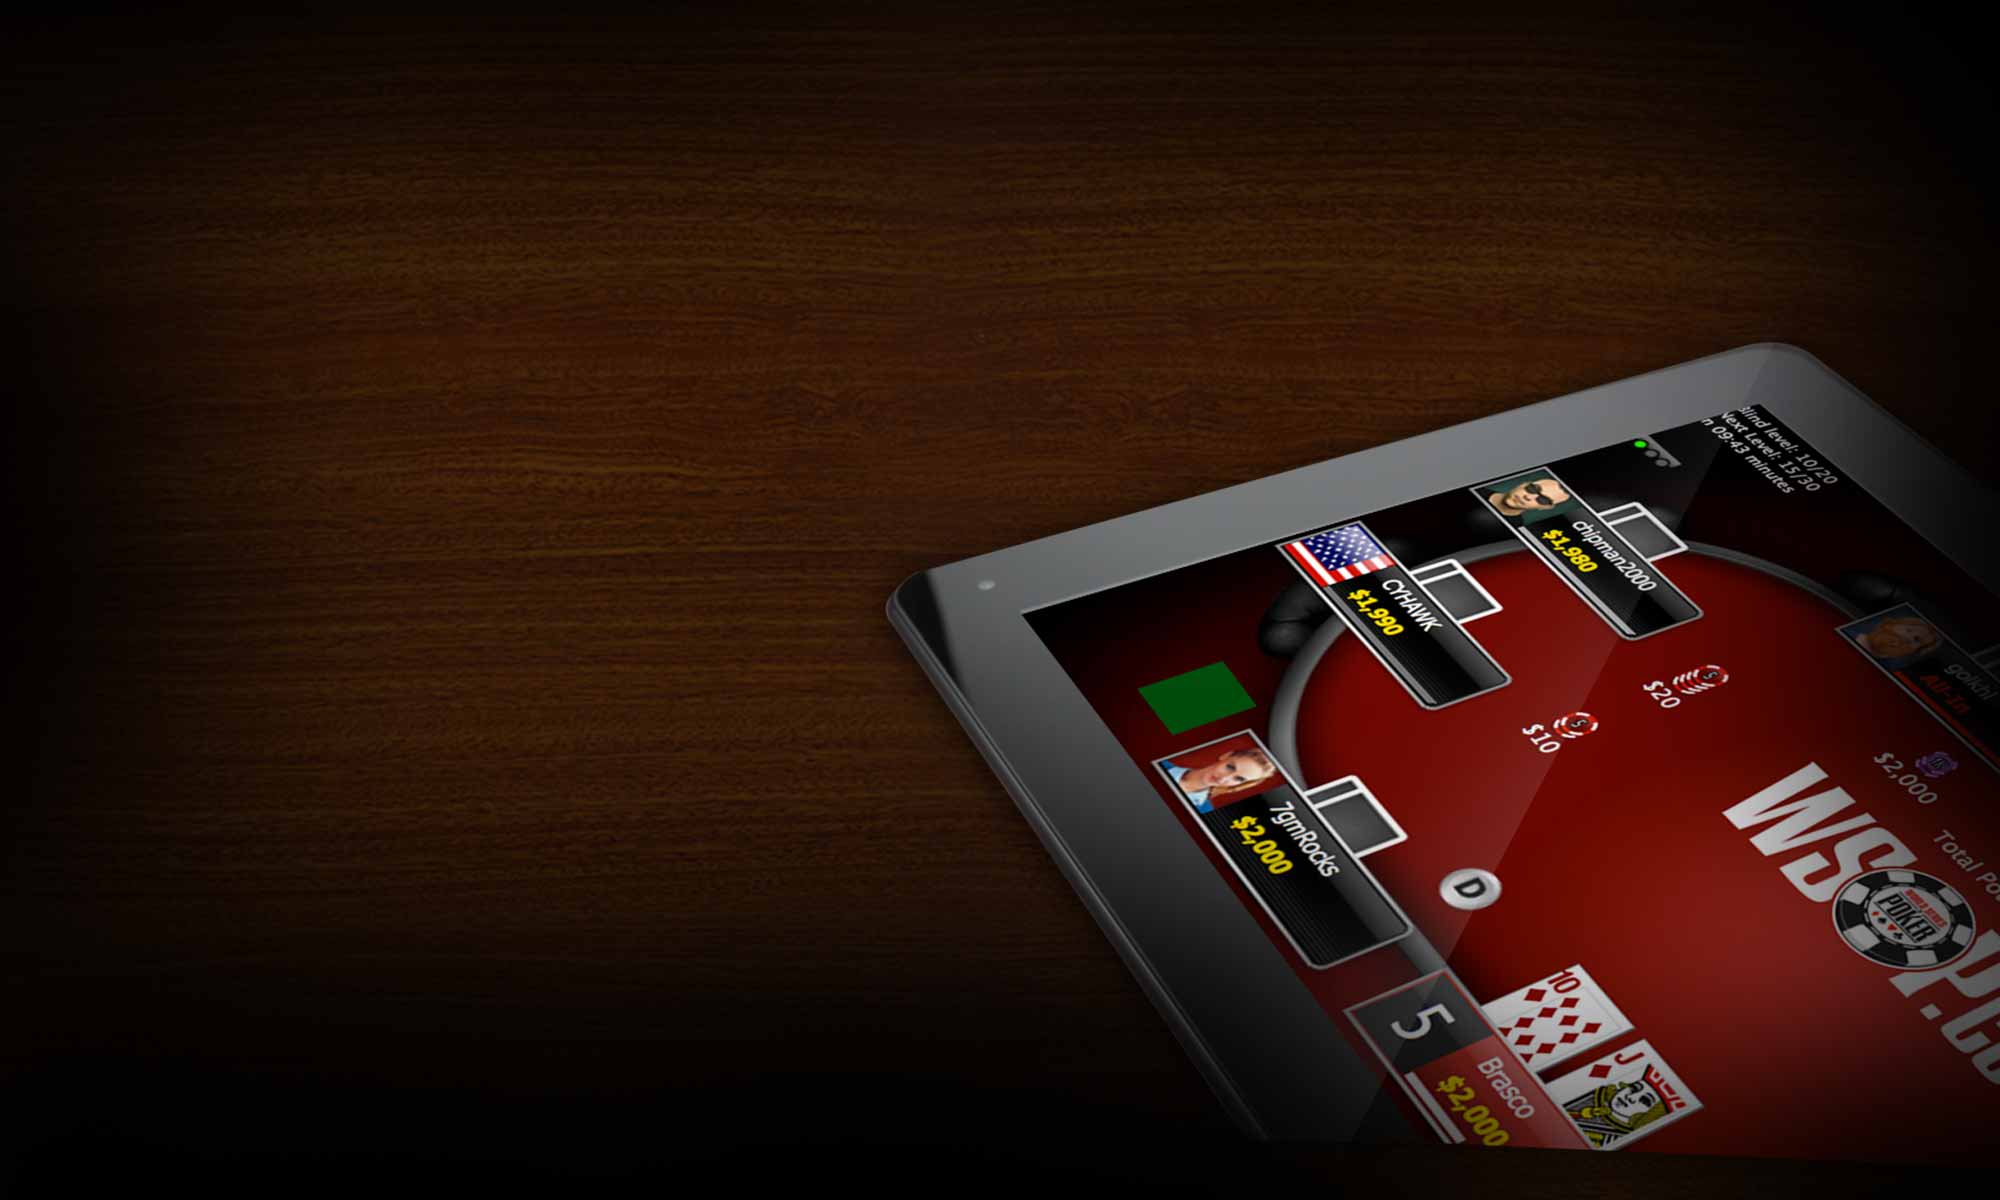 WSOP.com mobile poker